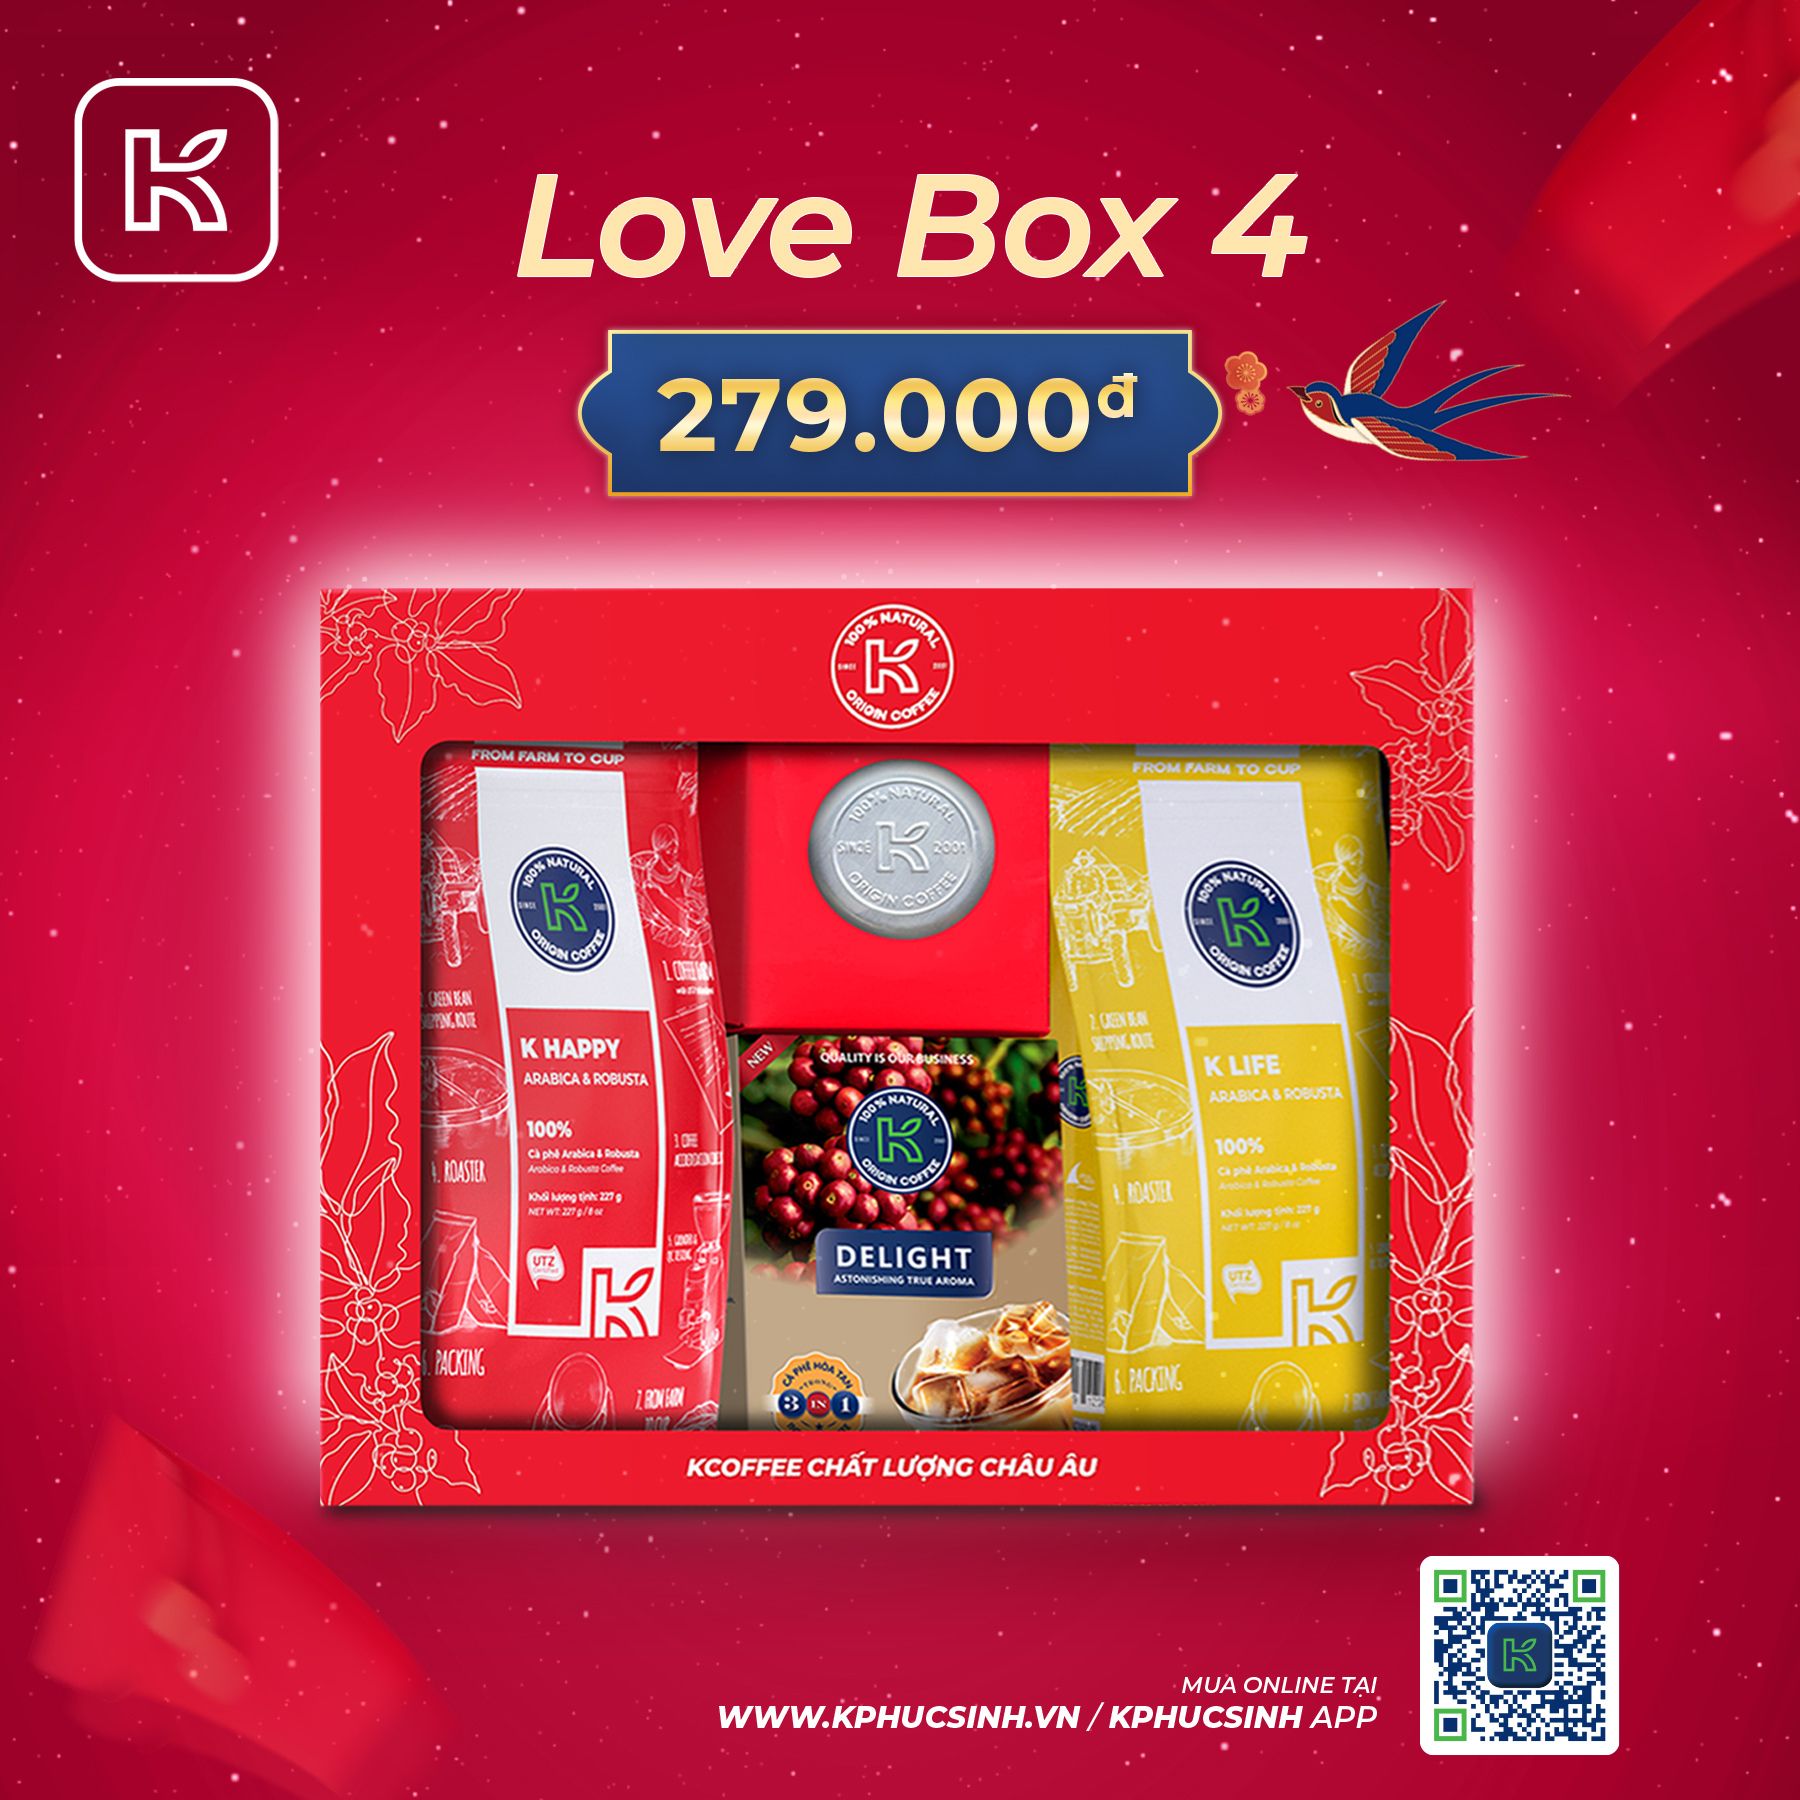 GIFTSET CÀ PHÊ LOVE BOX 4